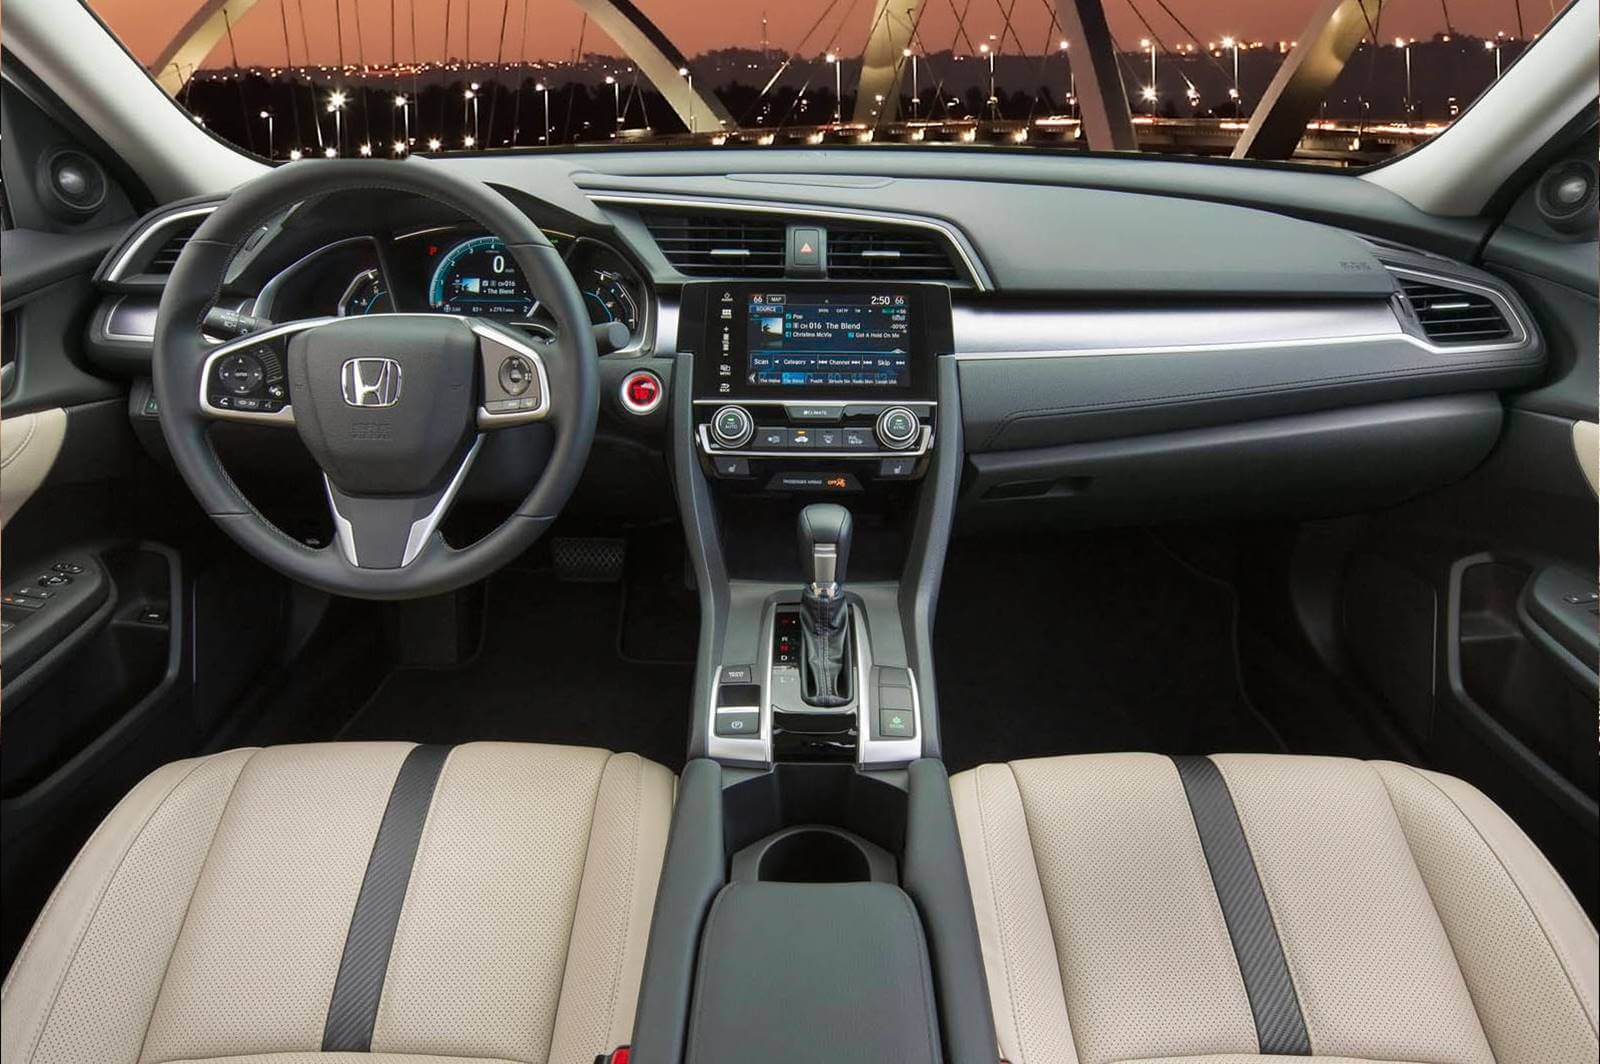 Novo Civic 2017 interior 1 Honda aposta em motor turbo e novas tecnologias com o novo Civic